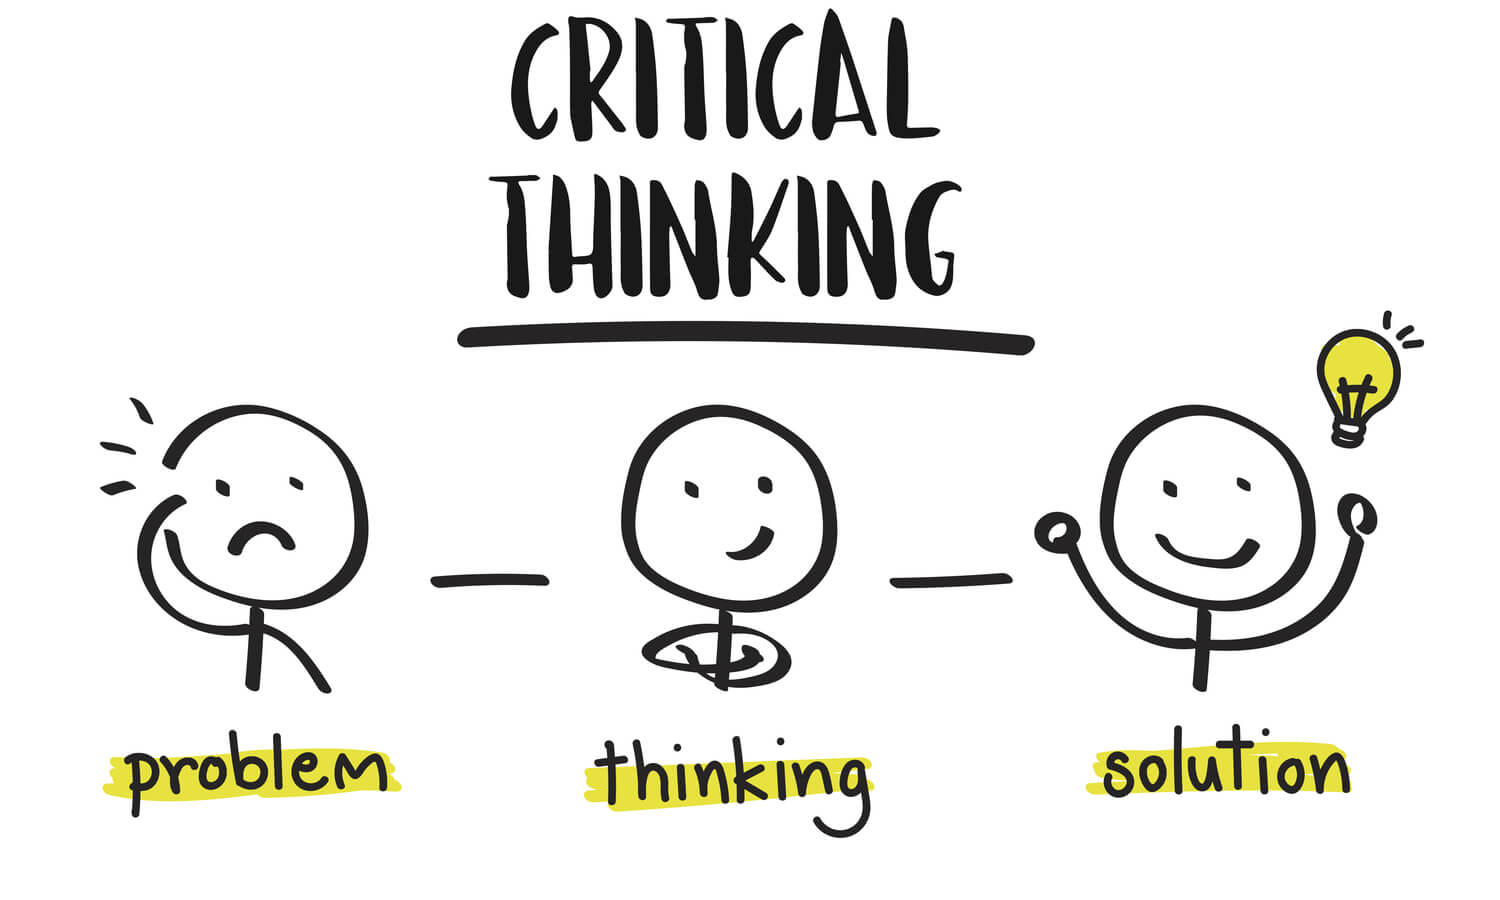 Critical Thinking là gì và cấu trúc cụm từ Critical Thinking trong câu Tiếng Anh